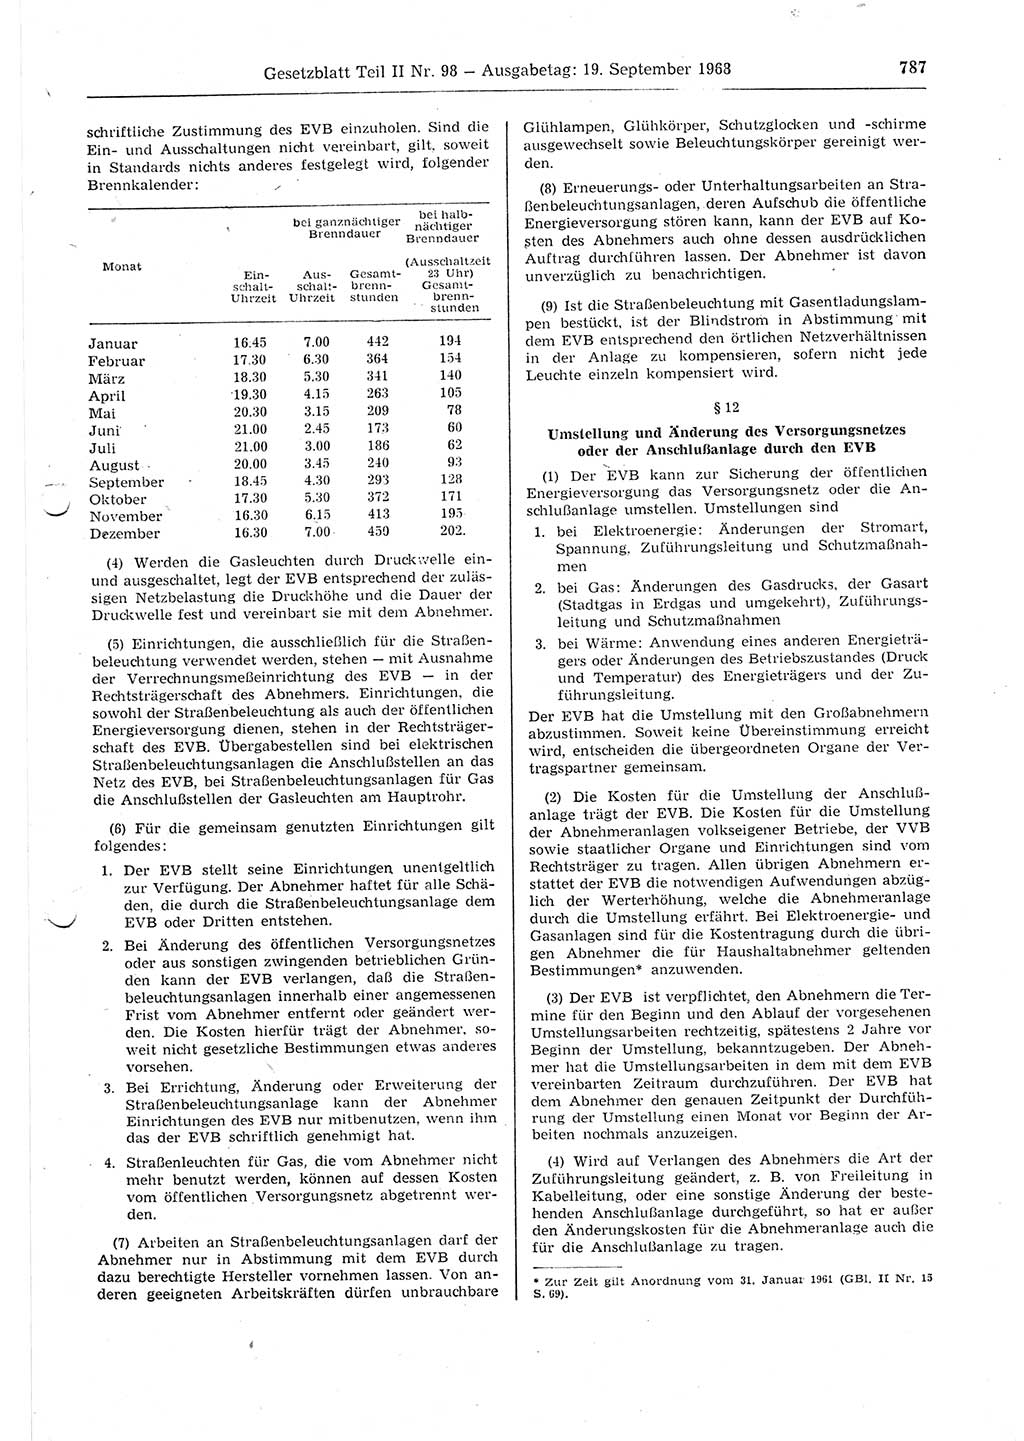 Gesetzblatt (GBl.) der Deutschen Demokratischen Republik (DDR) Teil ⅠⅠ 1968, Seite 787 (GBl. DDR ⅠⅠ 1968, S. 787)